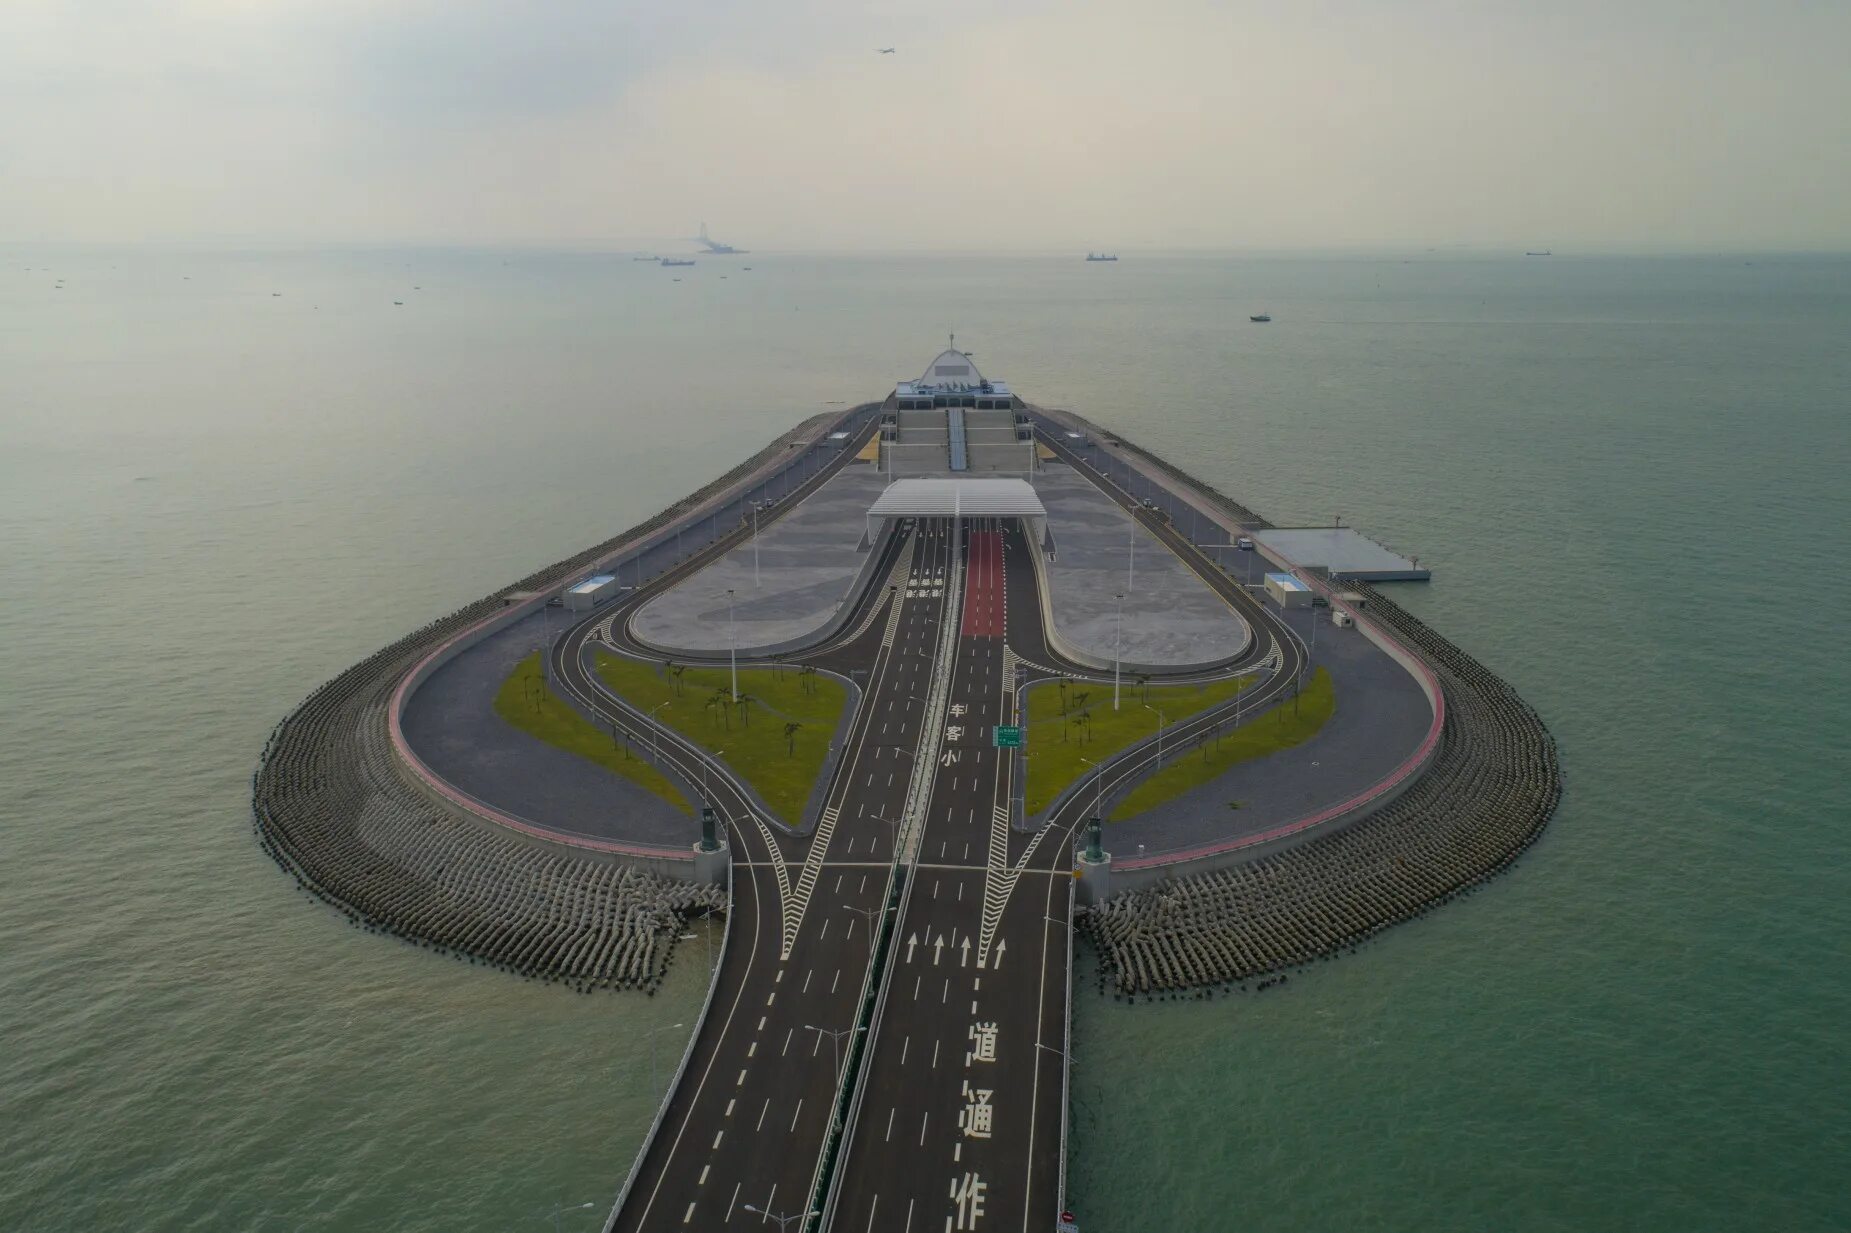 Мост Чжухай Макао. Морской мост Гонконг–Чжухай–Макао. Гонконг — Чжухай — Макао. Мост 55 км в Китае.